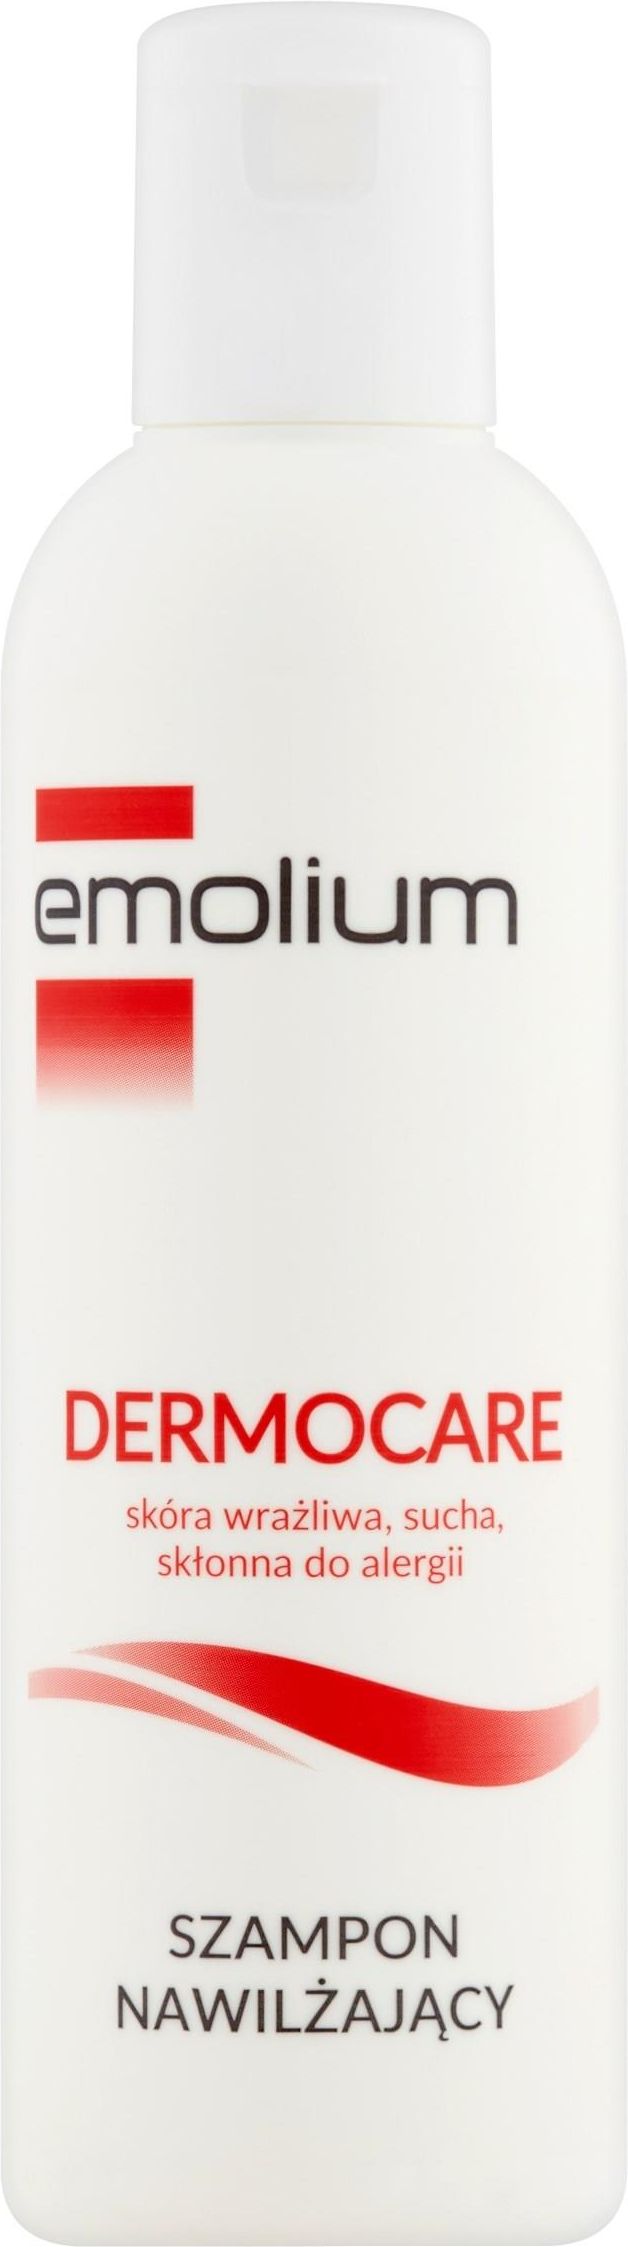 emolium 200ml szampon nawilżający